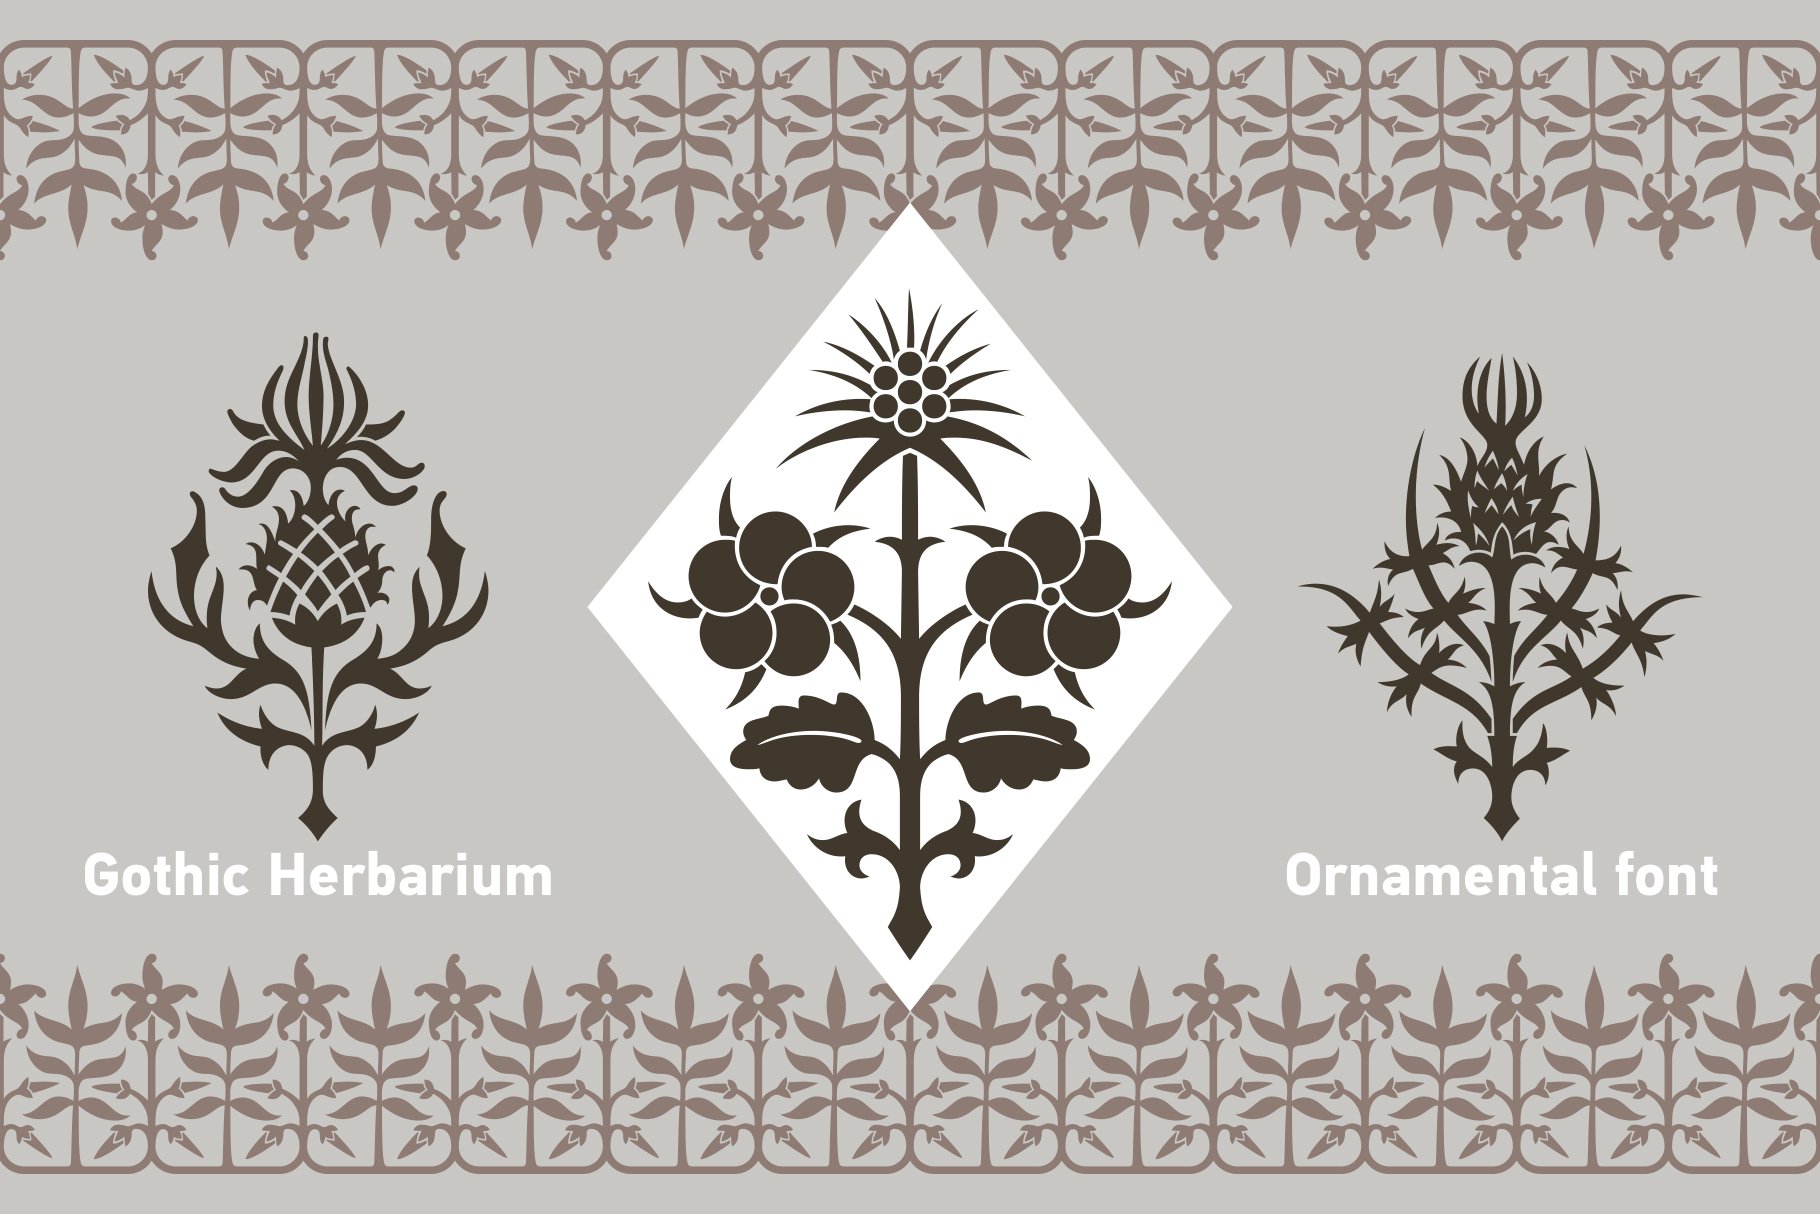 Gothic Herbarium preview image.